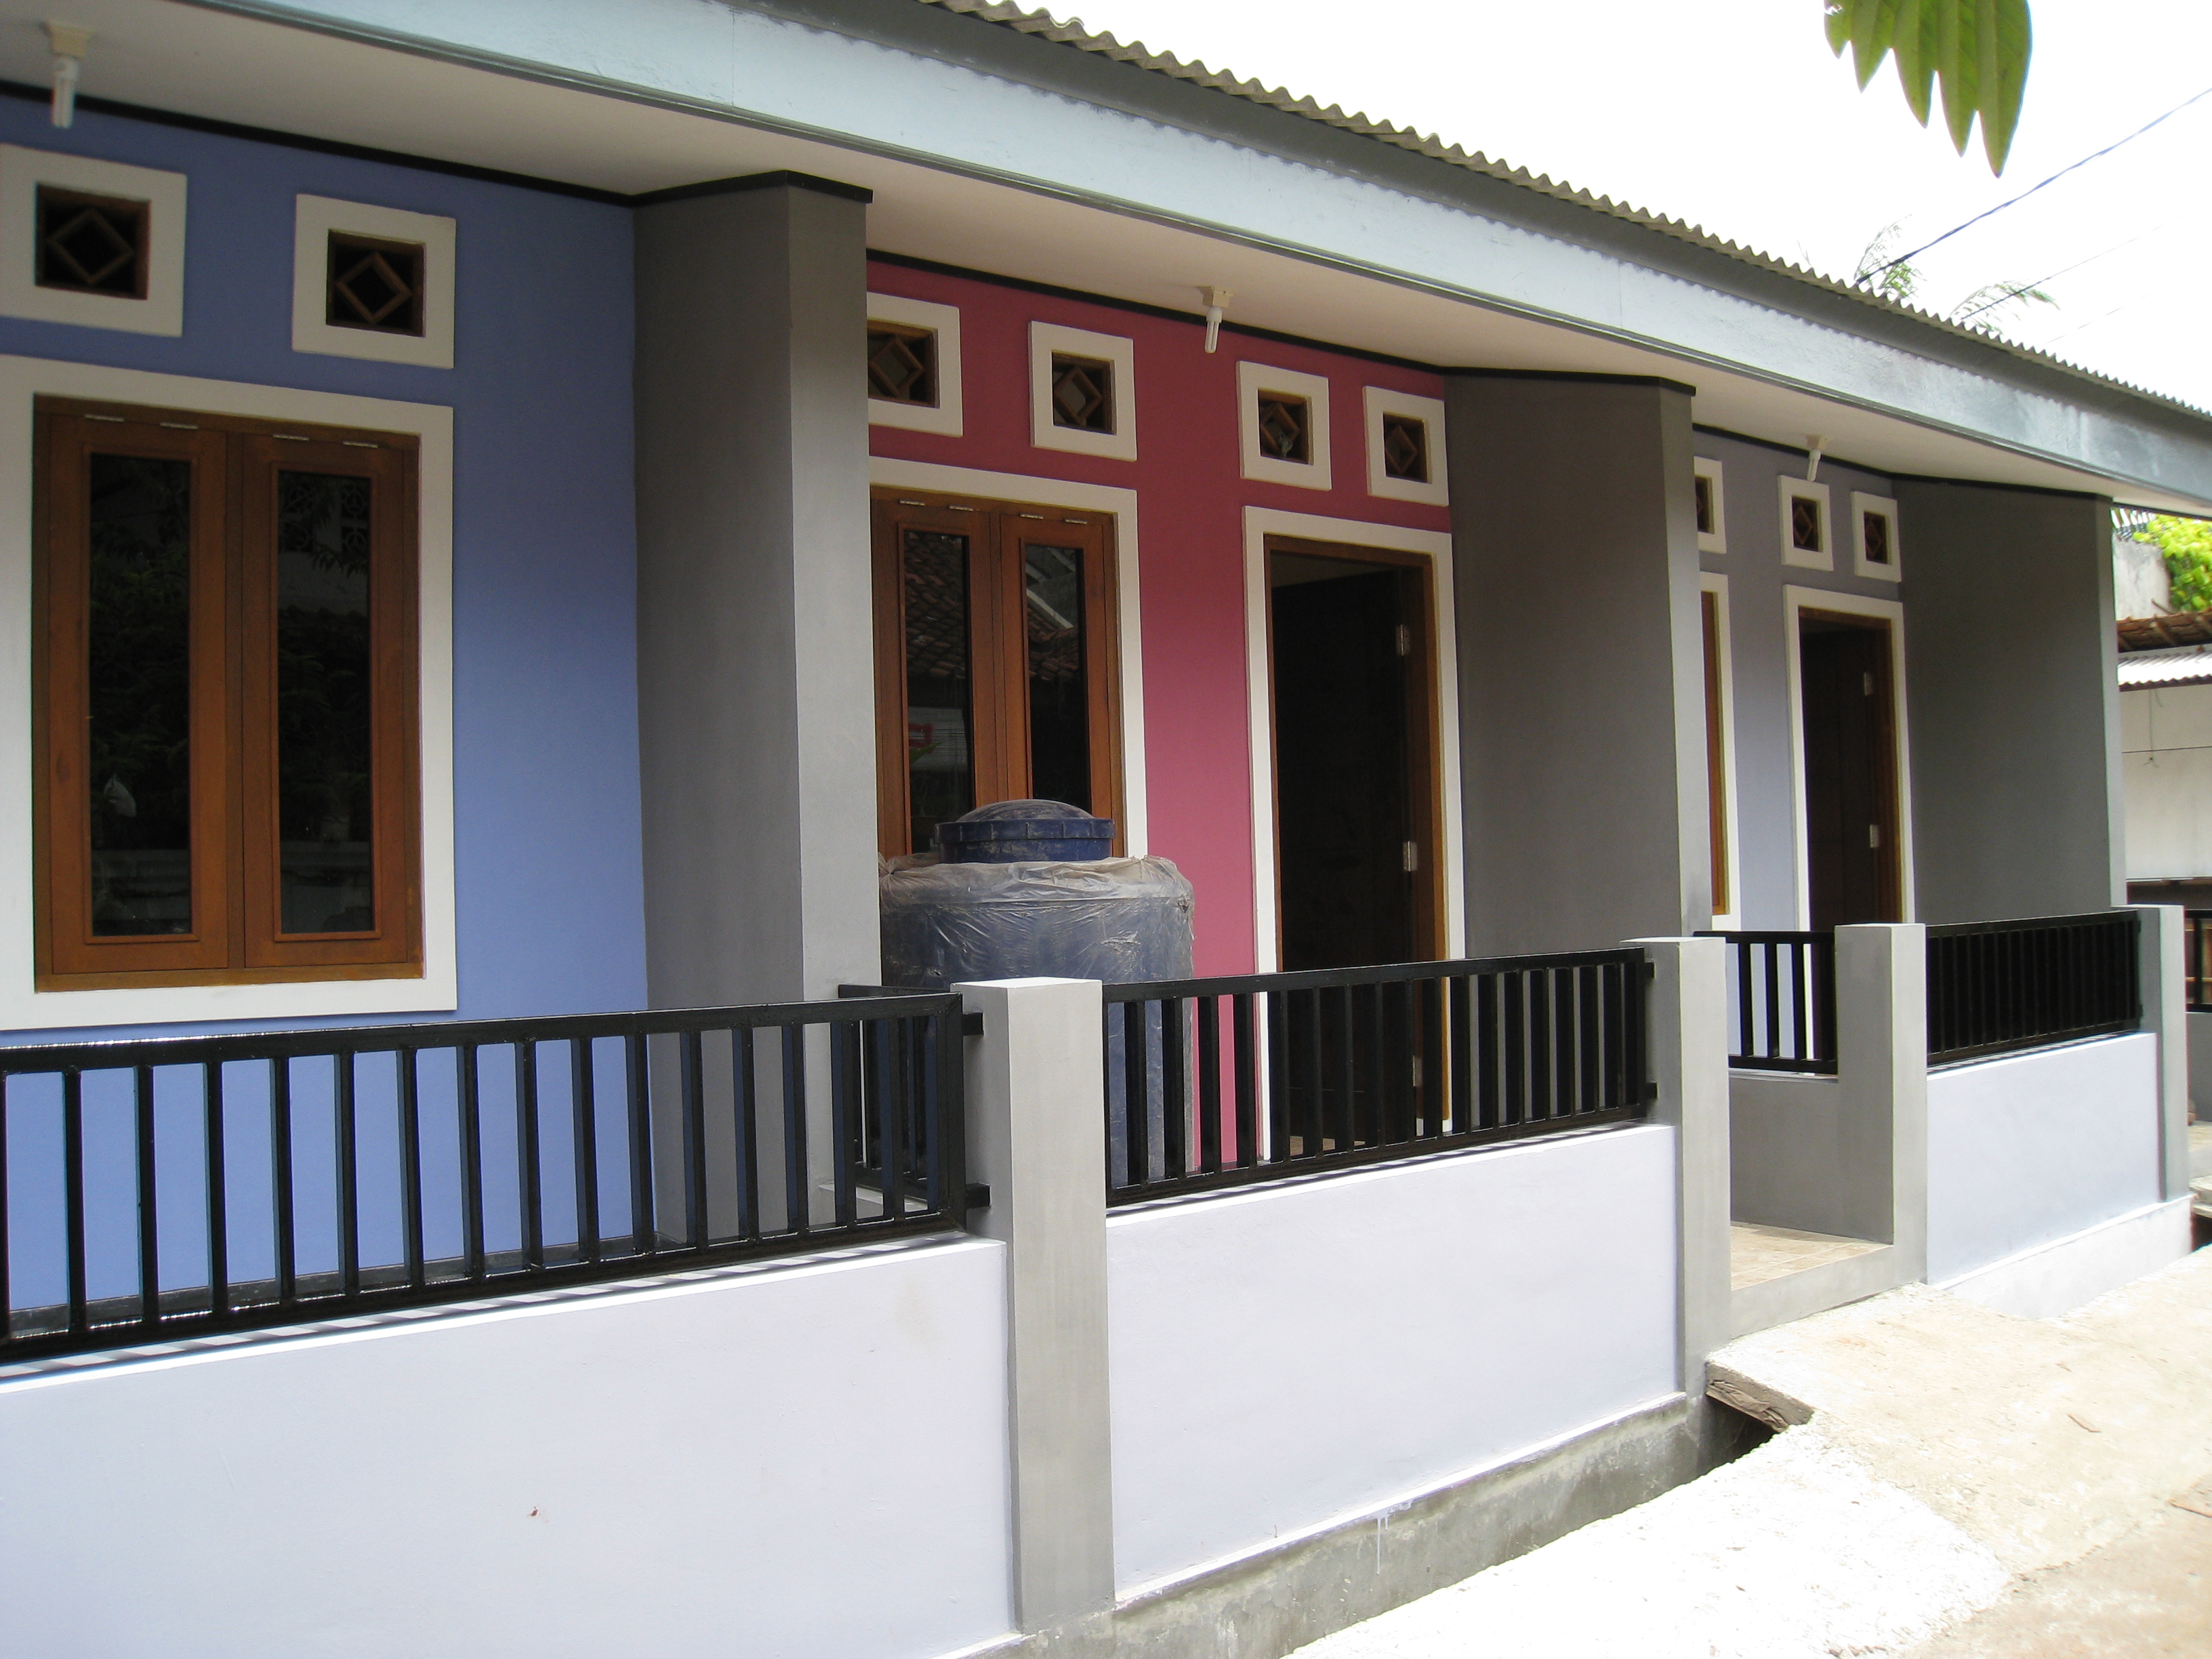   Rumah Minimalis Sederhana Jakarta Selatan | Model Rumah Minimalis